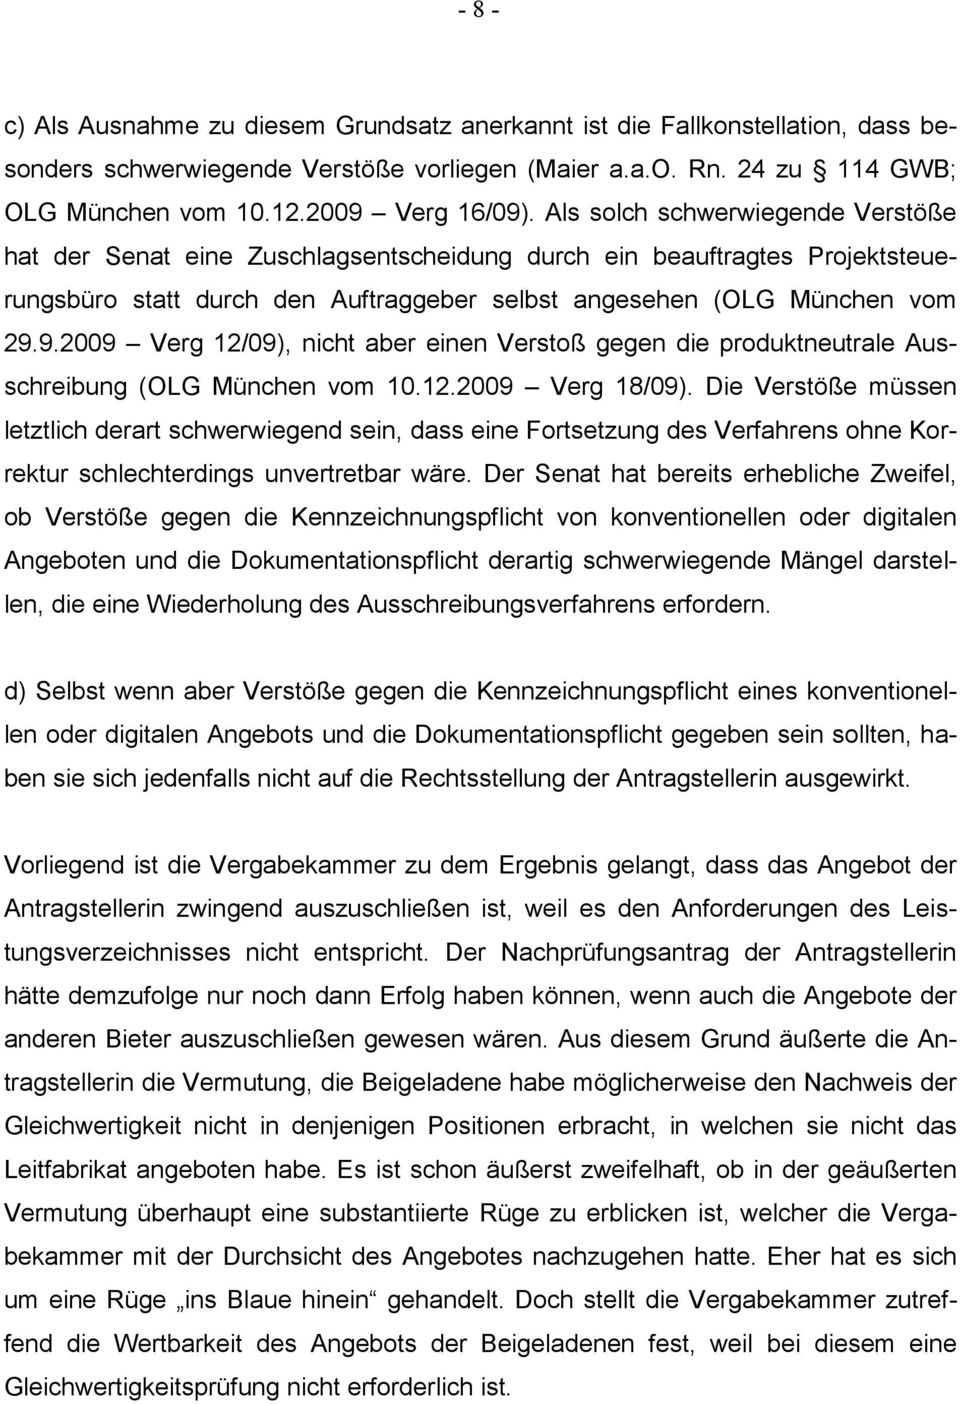 9.2009 Verg 12/09), nicht aber einen Verstoß gegen die produktneutrale Ausschreibung (OLG München vom 10.12.2009 Verg 18/09).